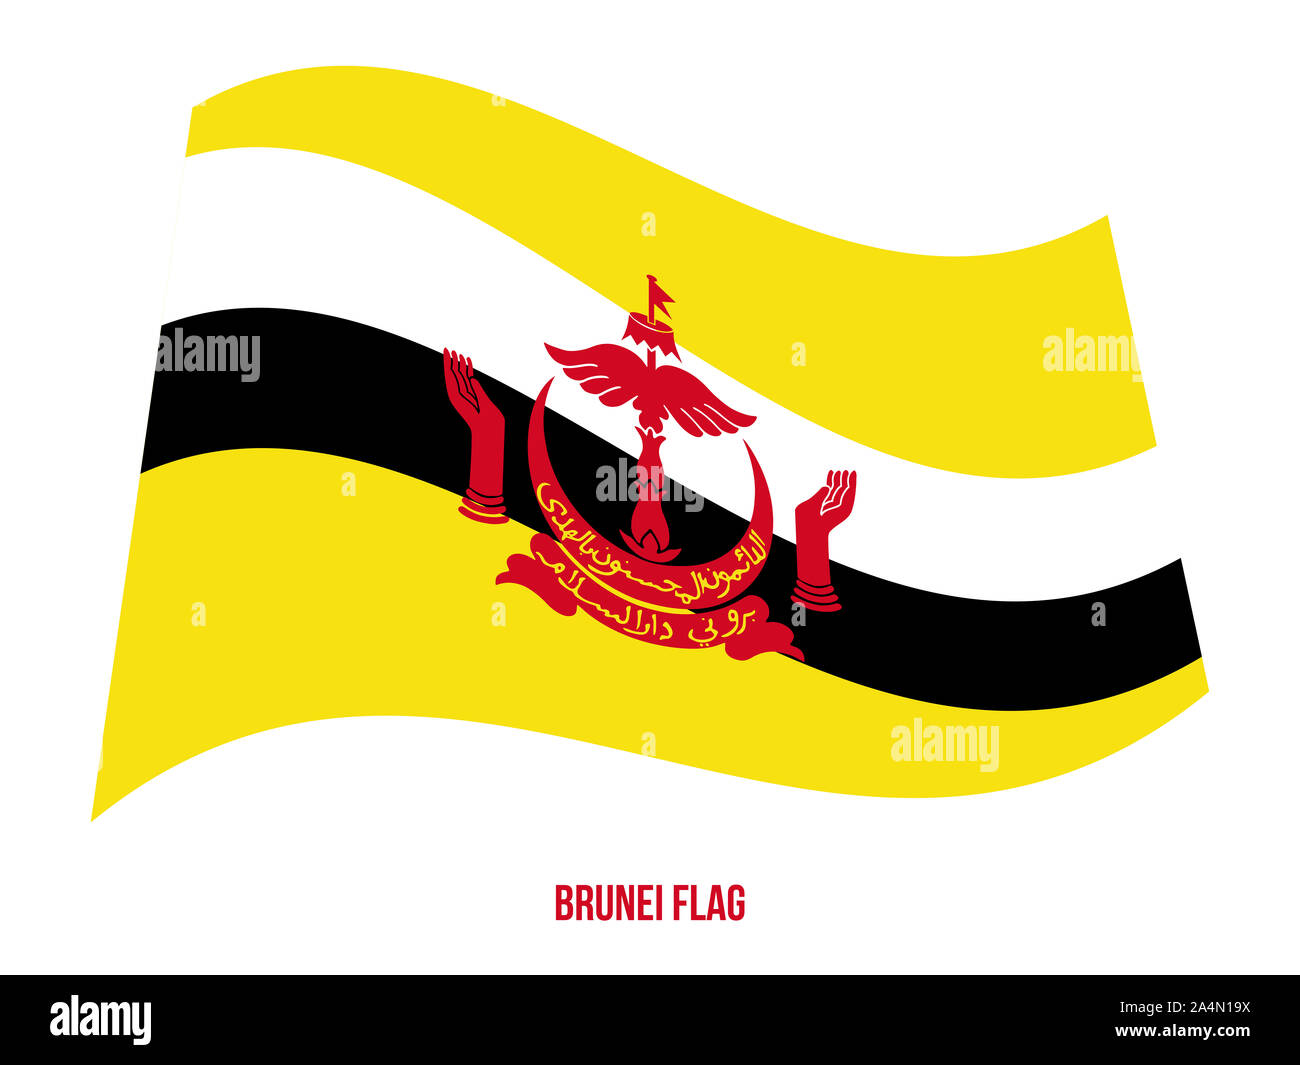 Brunei bandiera sventola illustrazione vettoriale su sfondo bianco. Brunei bandiera nazionale. Foto Stock